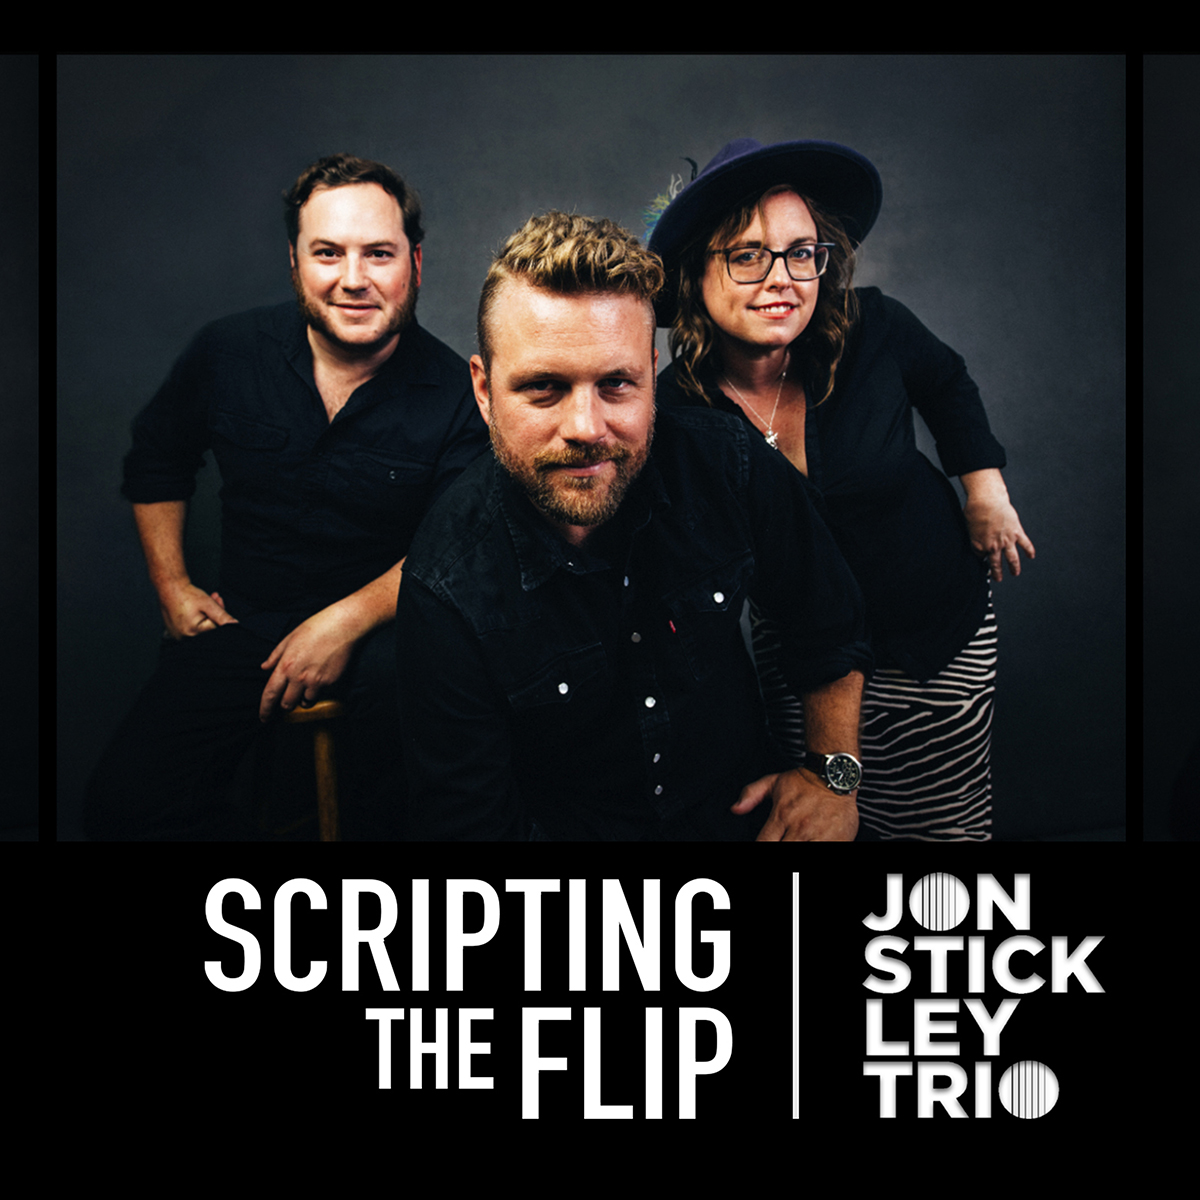 The cover for the Jon Stickley Trio album, Scripting The Flip